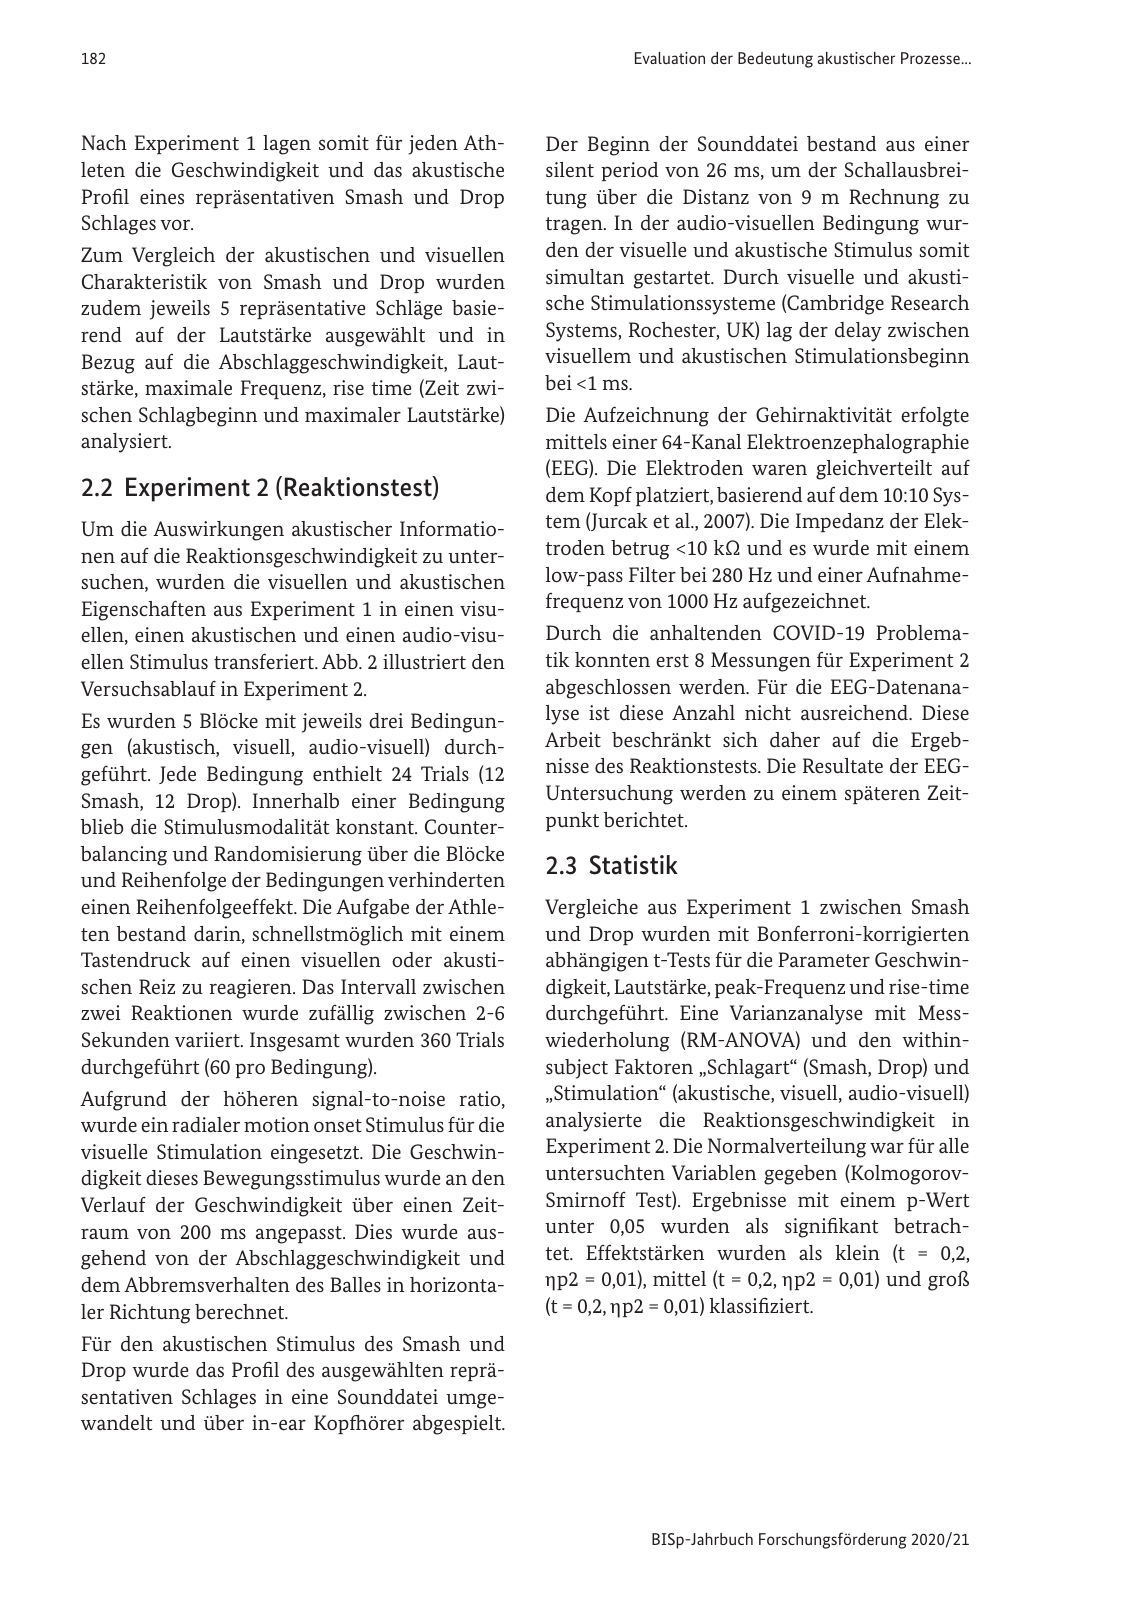 Vorschau BISp-Jahrbuch 2020/21 Seite 184